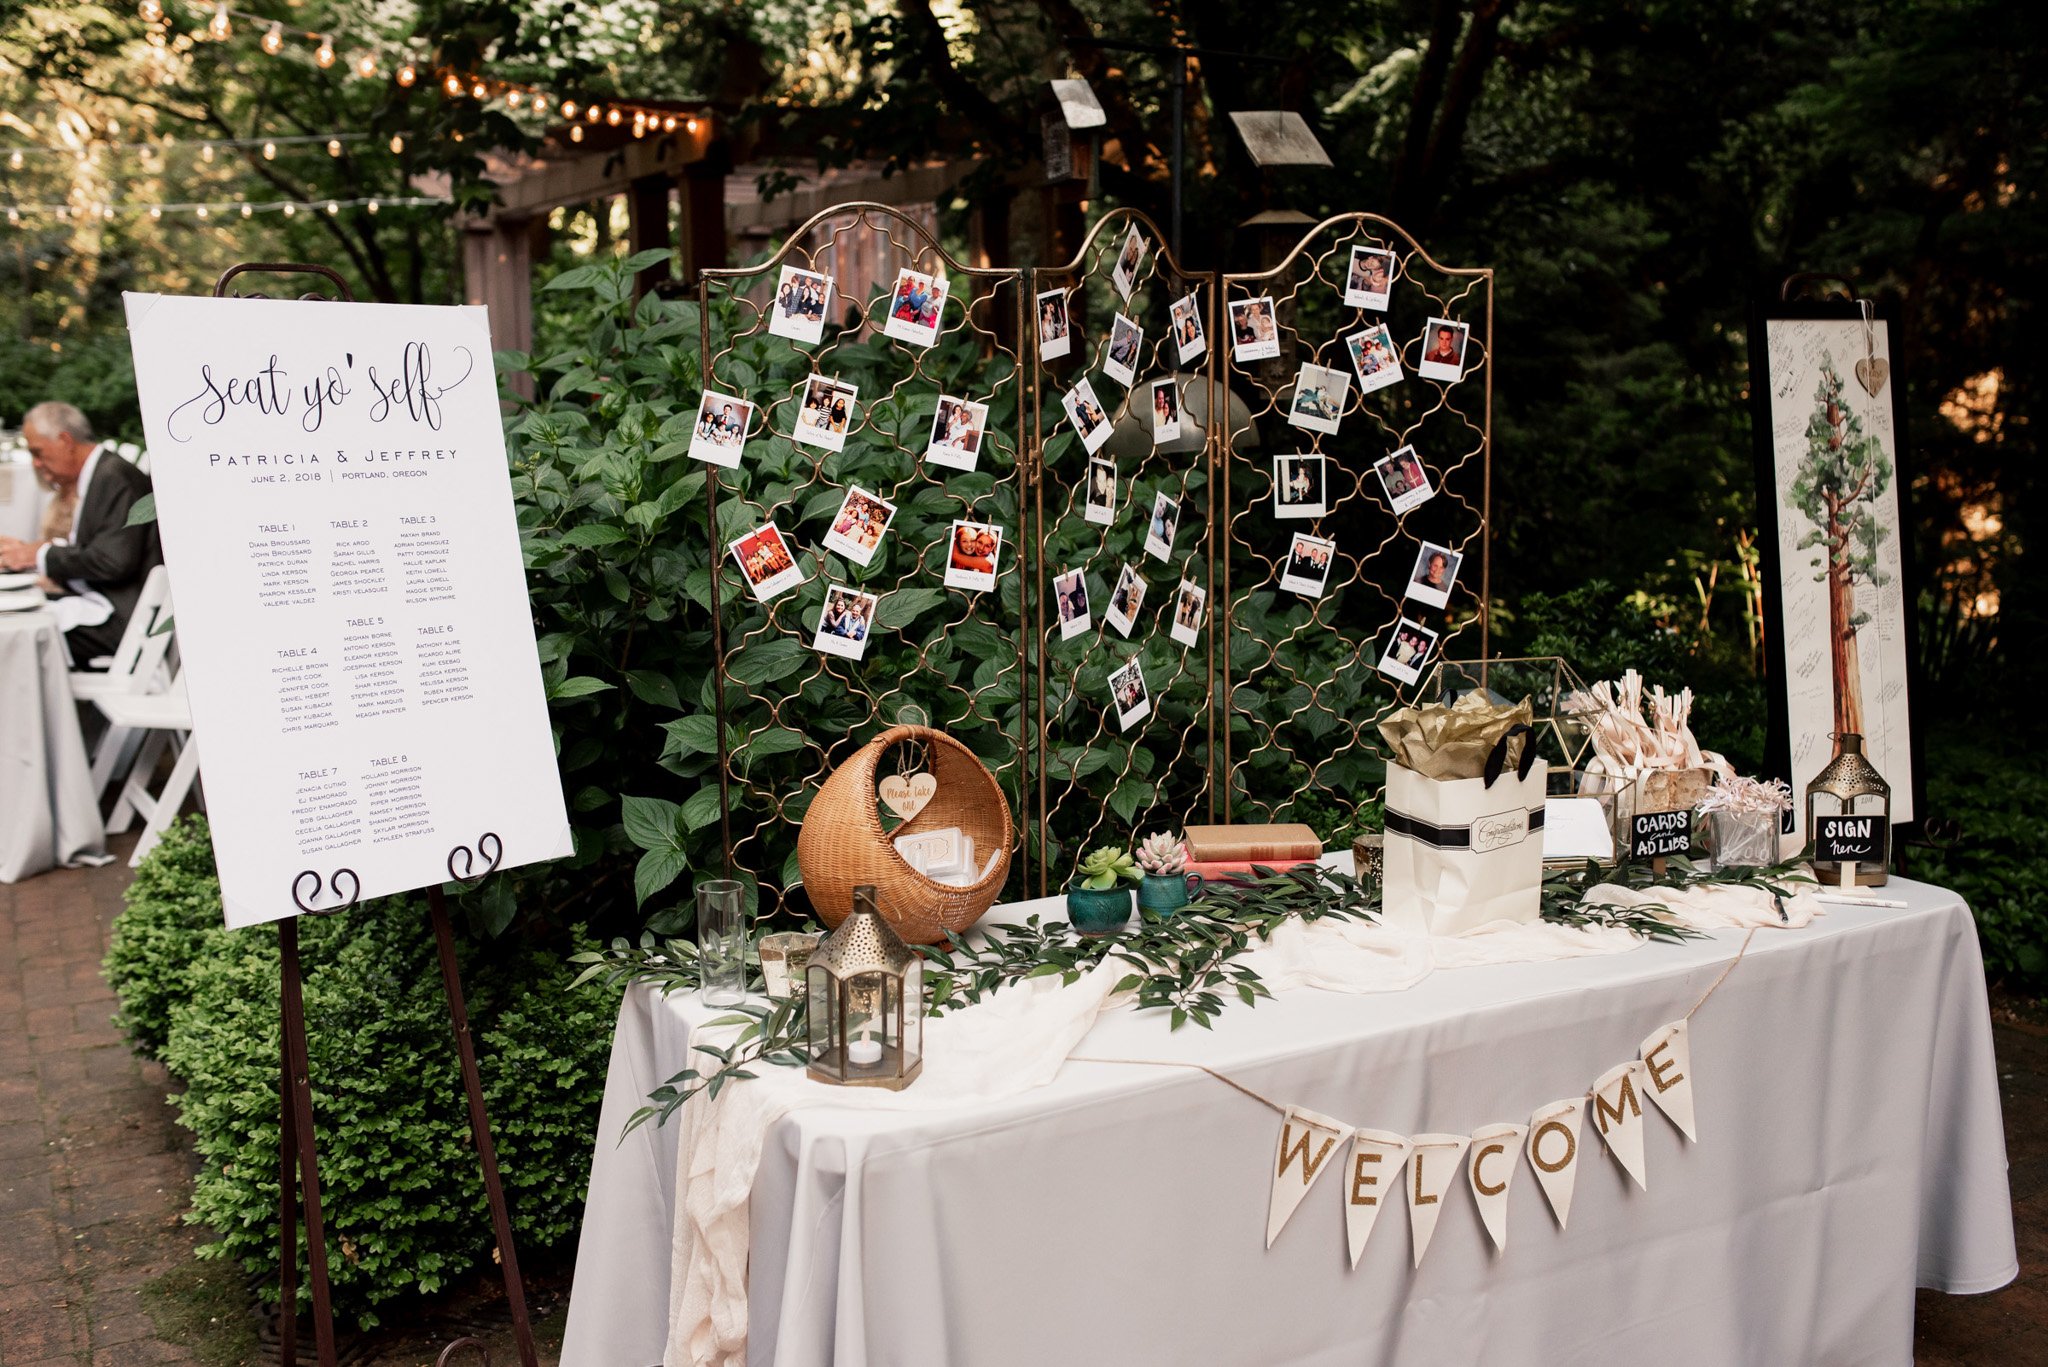 Leach Botanical Garden Portland Wedding Venue